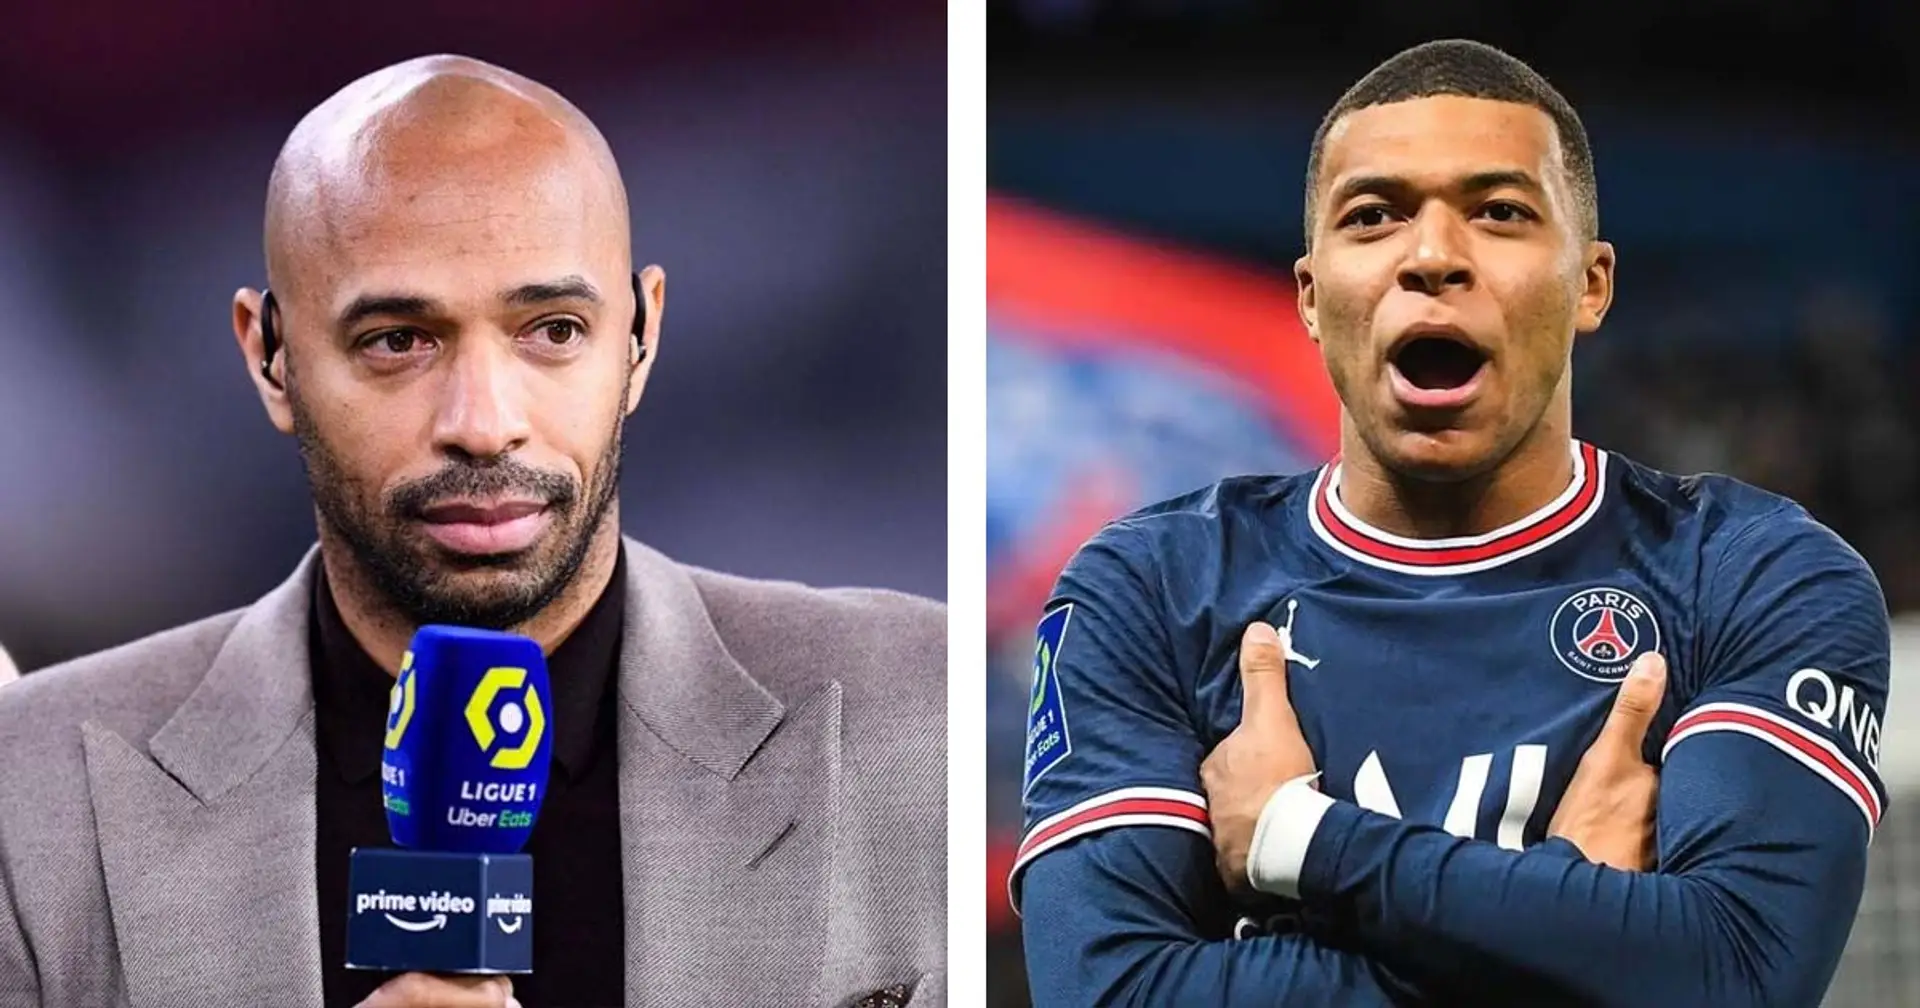 "À l’étranger, ils nous envient grave" : Thierry Henry demande à tous d'être fier de Mbappé dans son départ du PSG